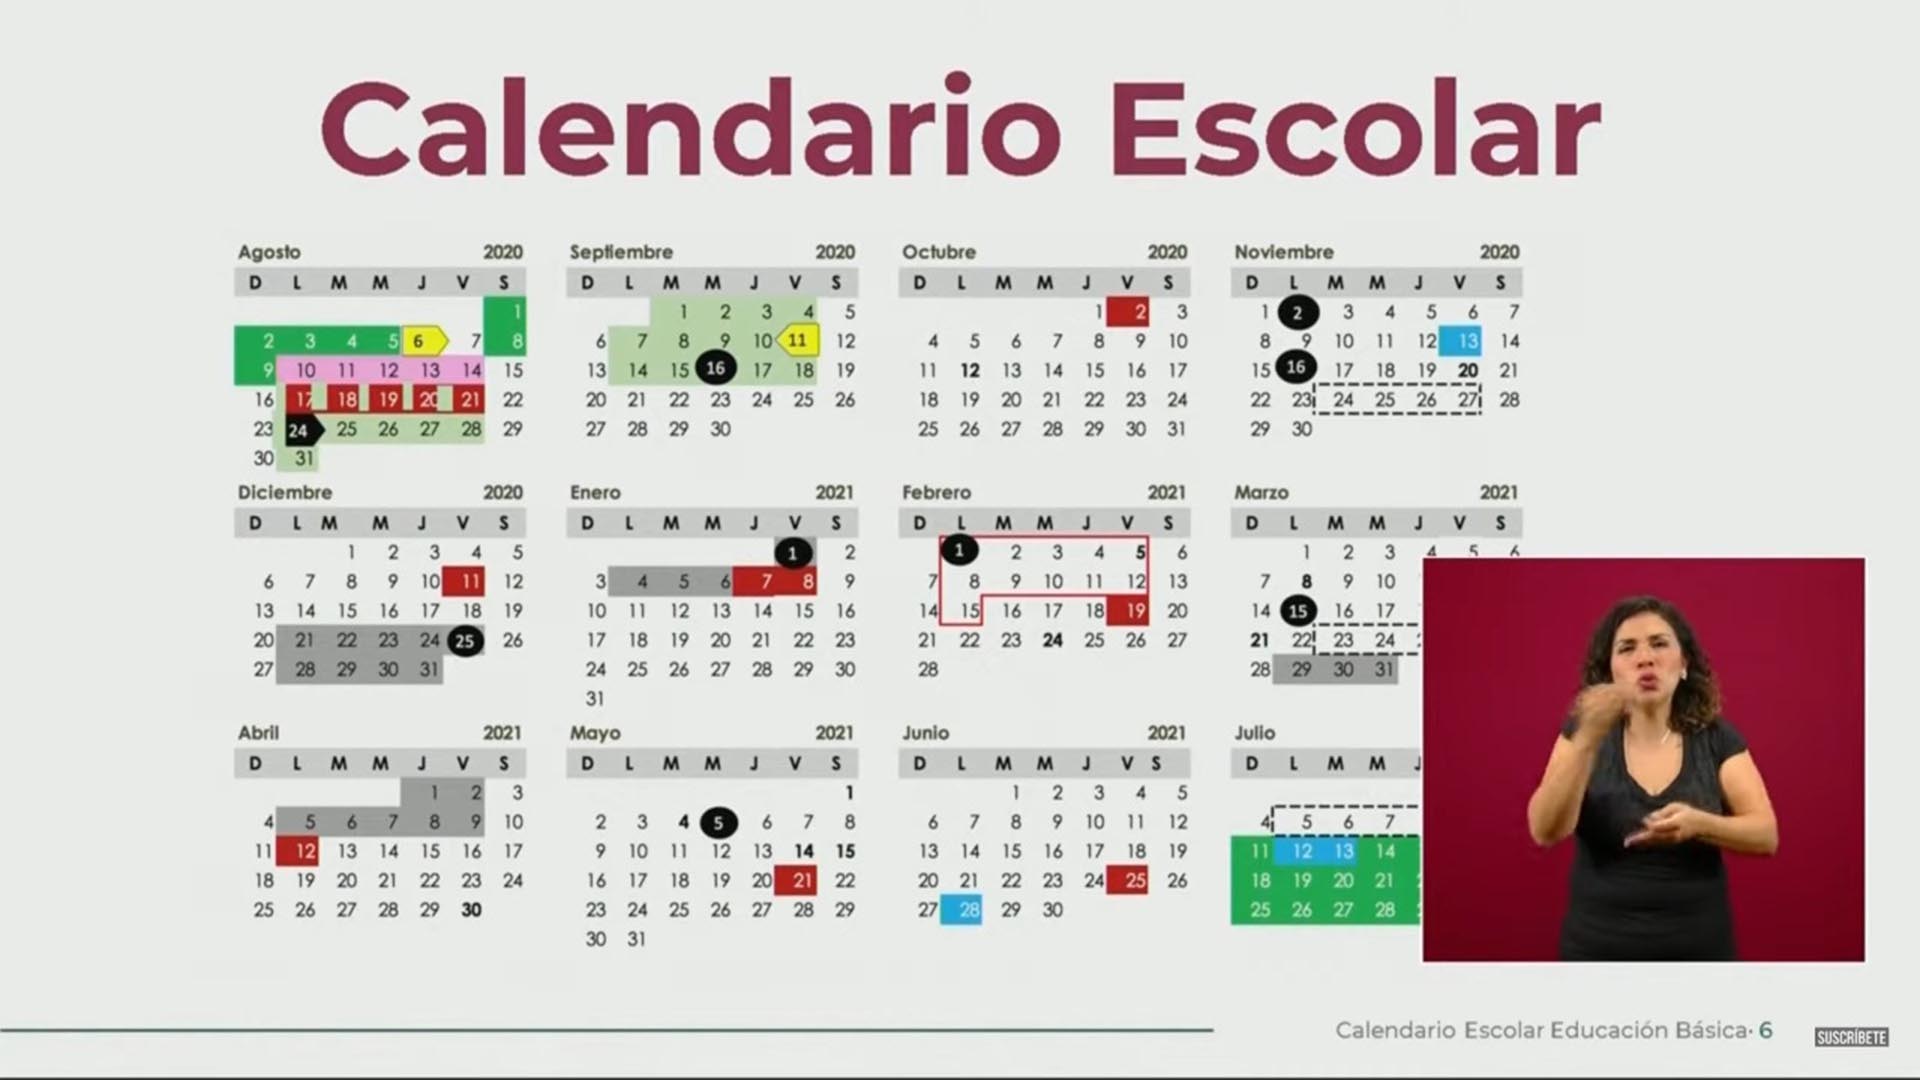 Calendario oficial del ciclo escolar 2020-2021 (Foto: Secretaría de Educación Pública)